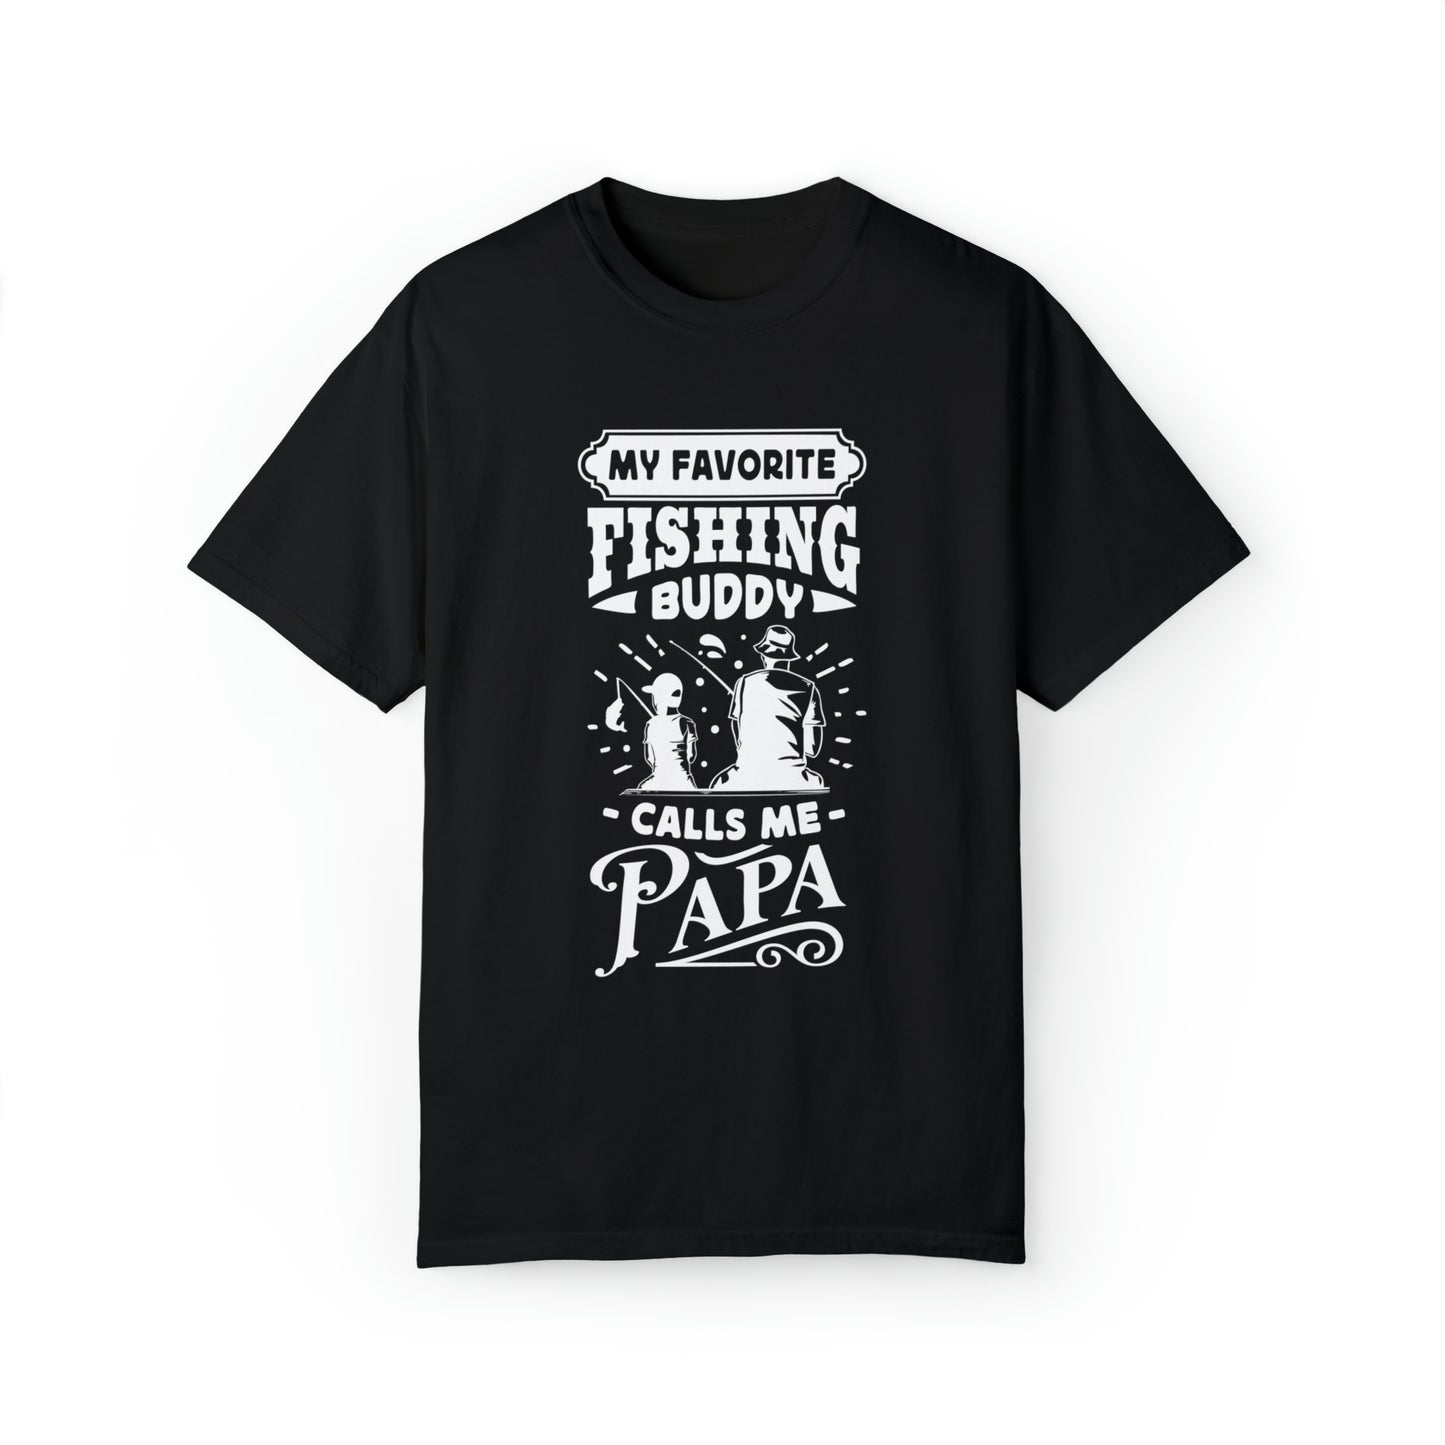 "Cherished Fishing Companion: My Little One Calls Me Papa" T-Shirt